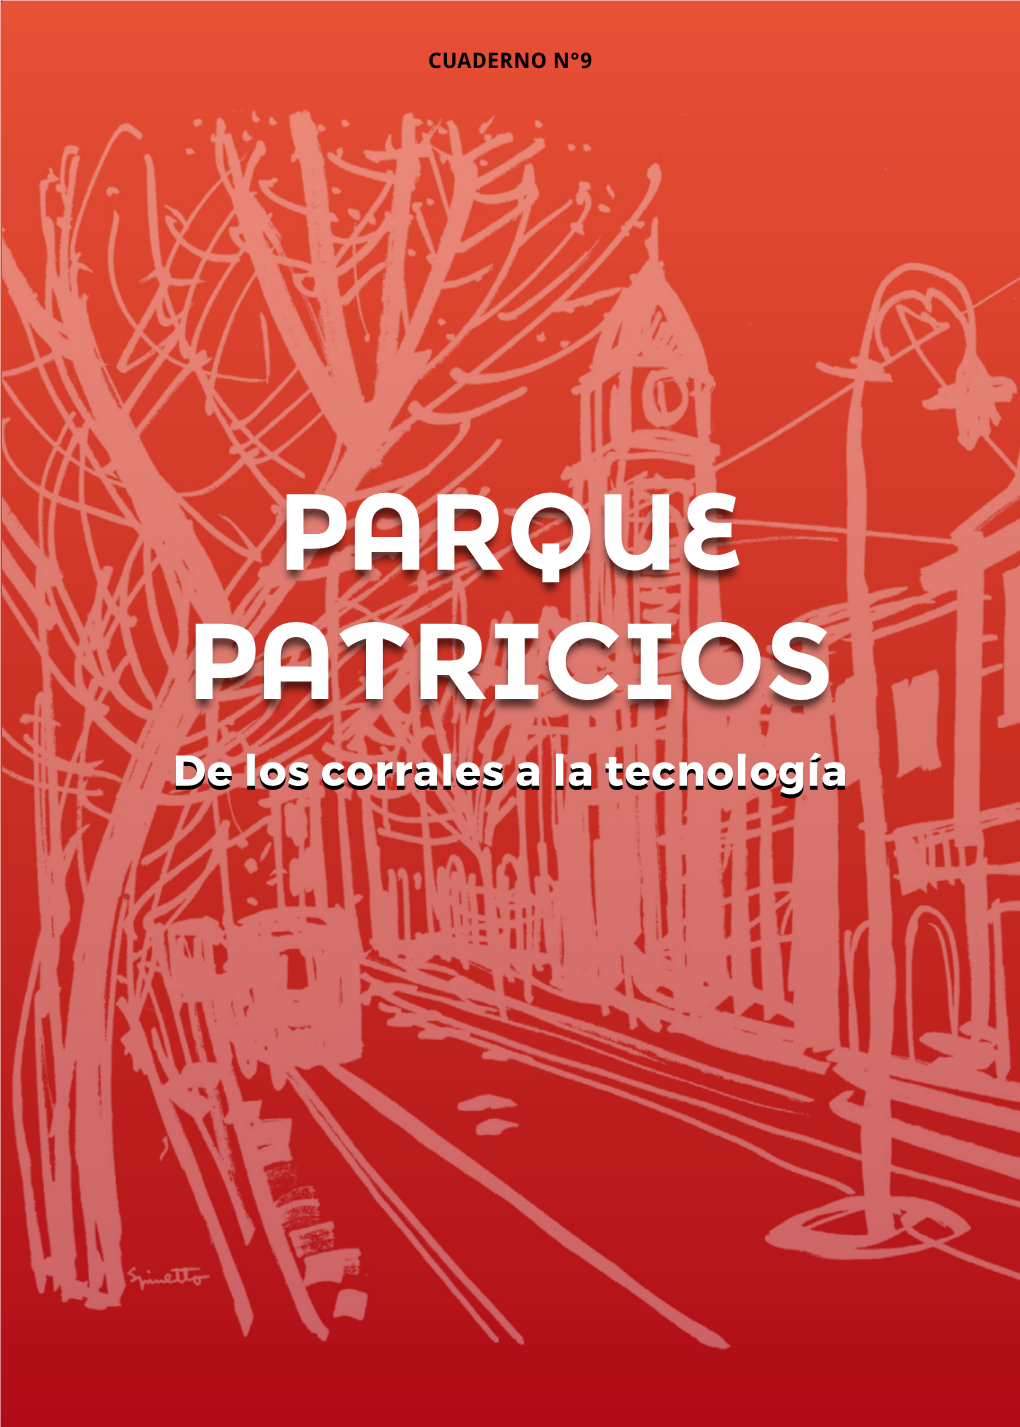 PARQUE PATRICIOS Del Tambor a La Tecnología De Loscorralesala De Loscorralesala PATRICIOS PARQUE CUADERNO N°9 CUADERNO